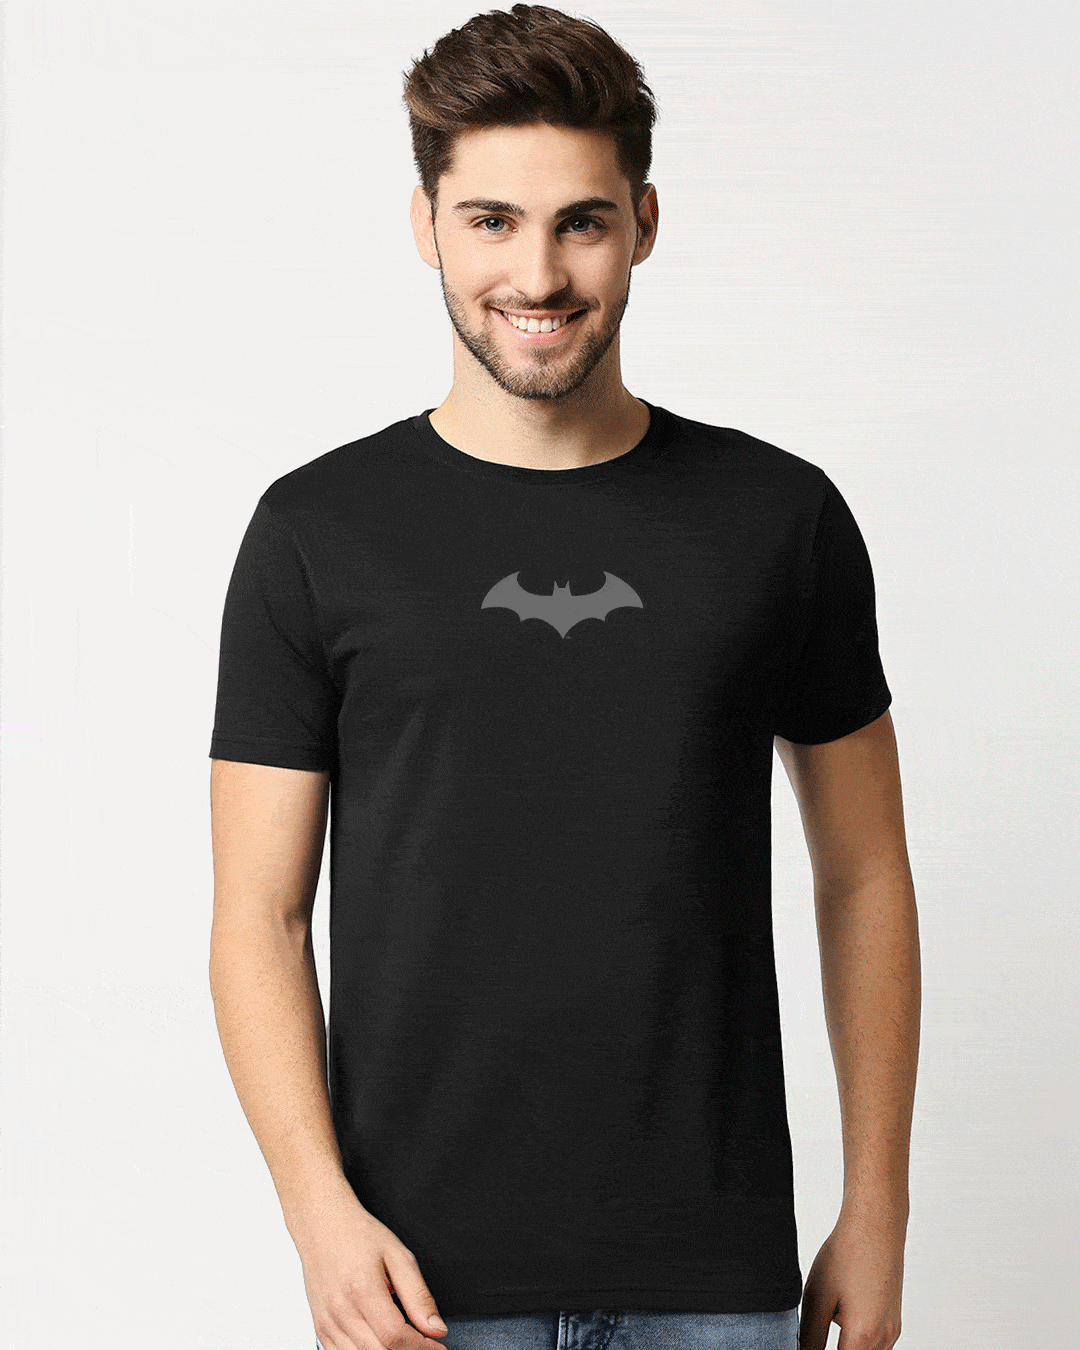 Buy The Chibi Bat Printed T-Shirt for Men black Online at Bewakoof